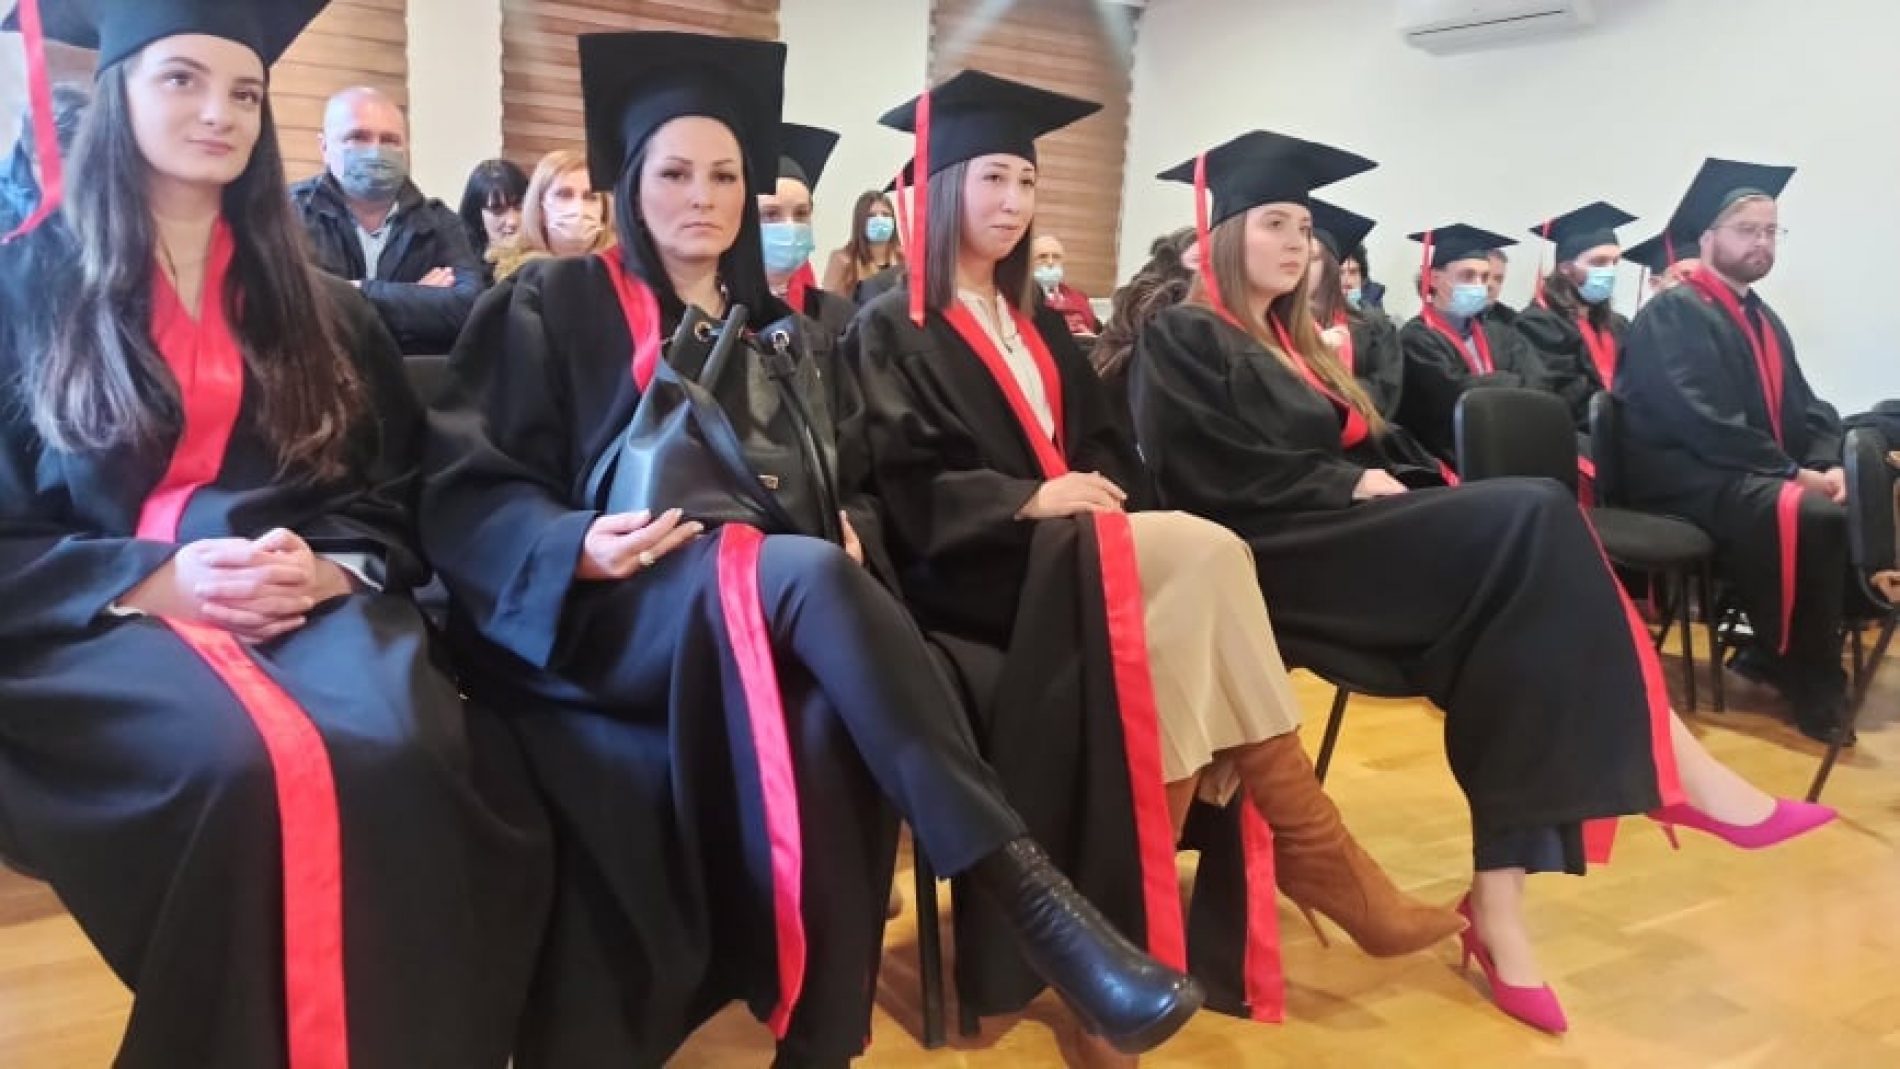 Internacionalni Univerzitet u Goraždu – Diplome dobilo 36 studenata, najavljene stipendije za studente iz BPK Goražde